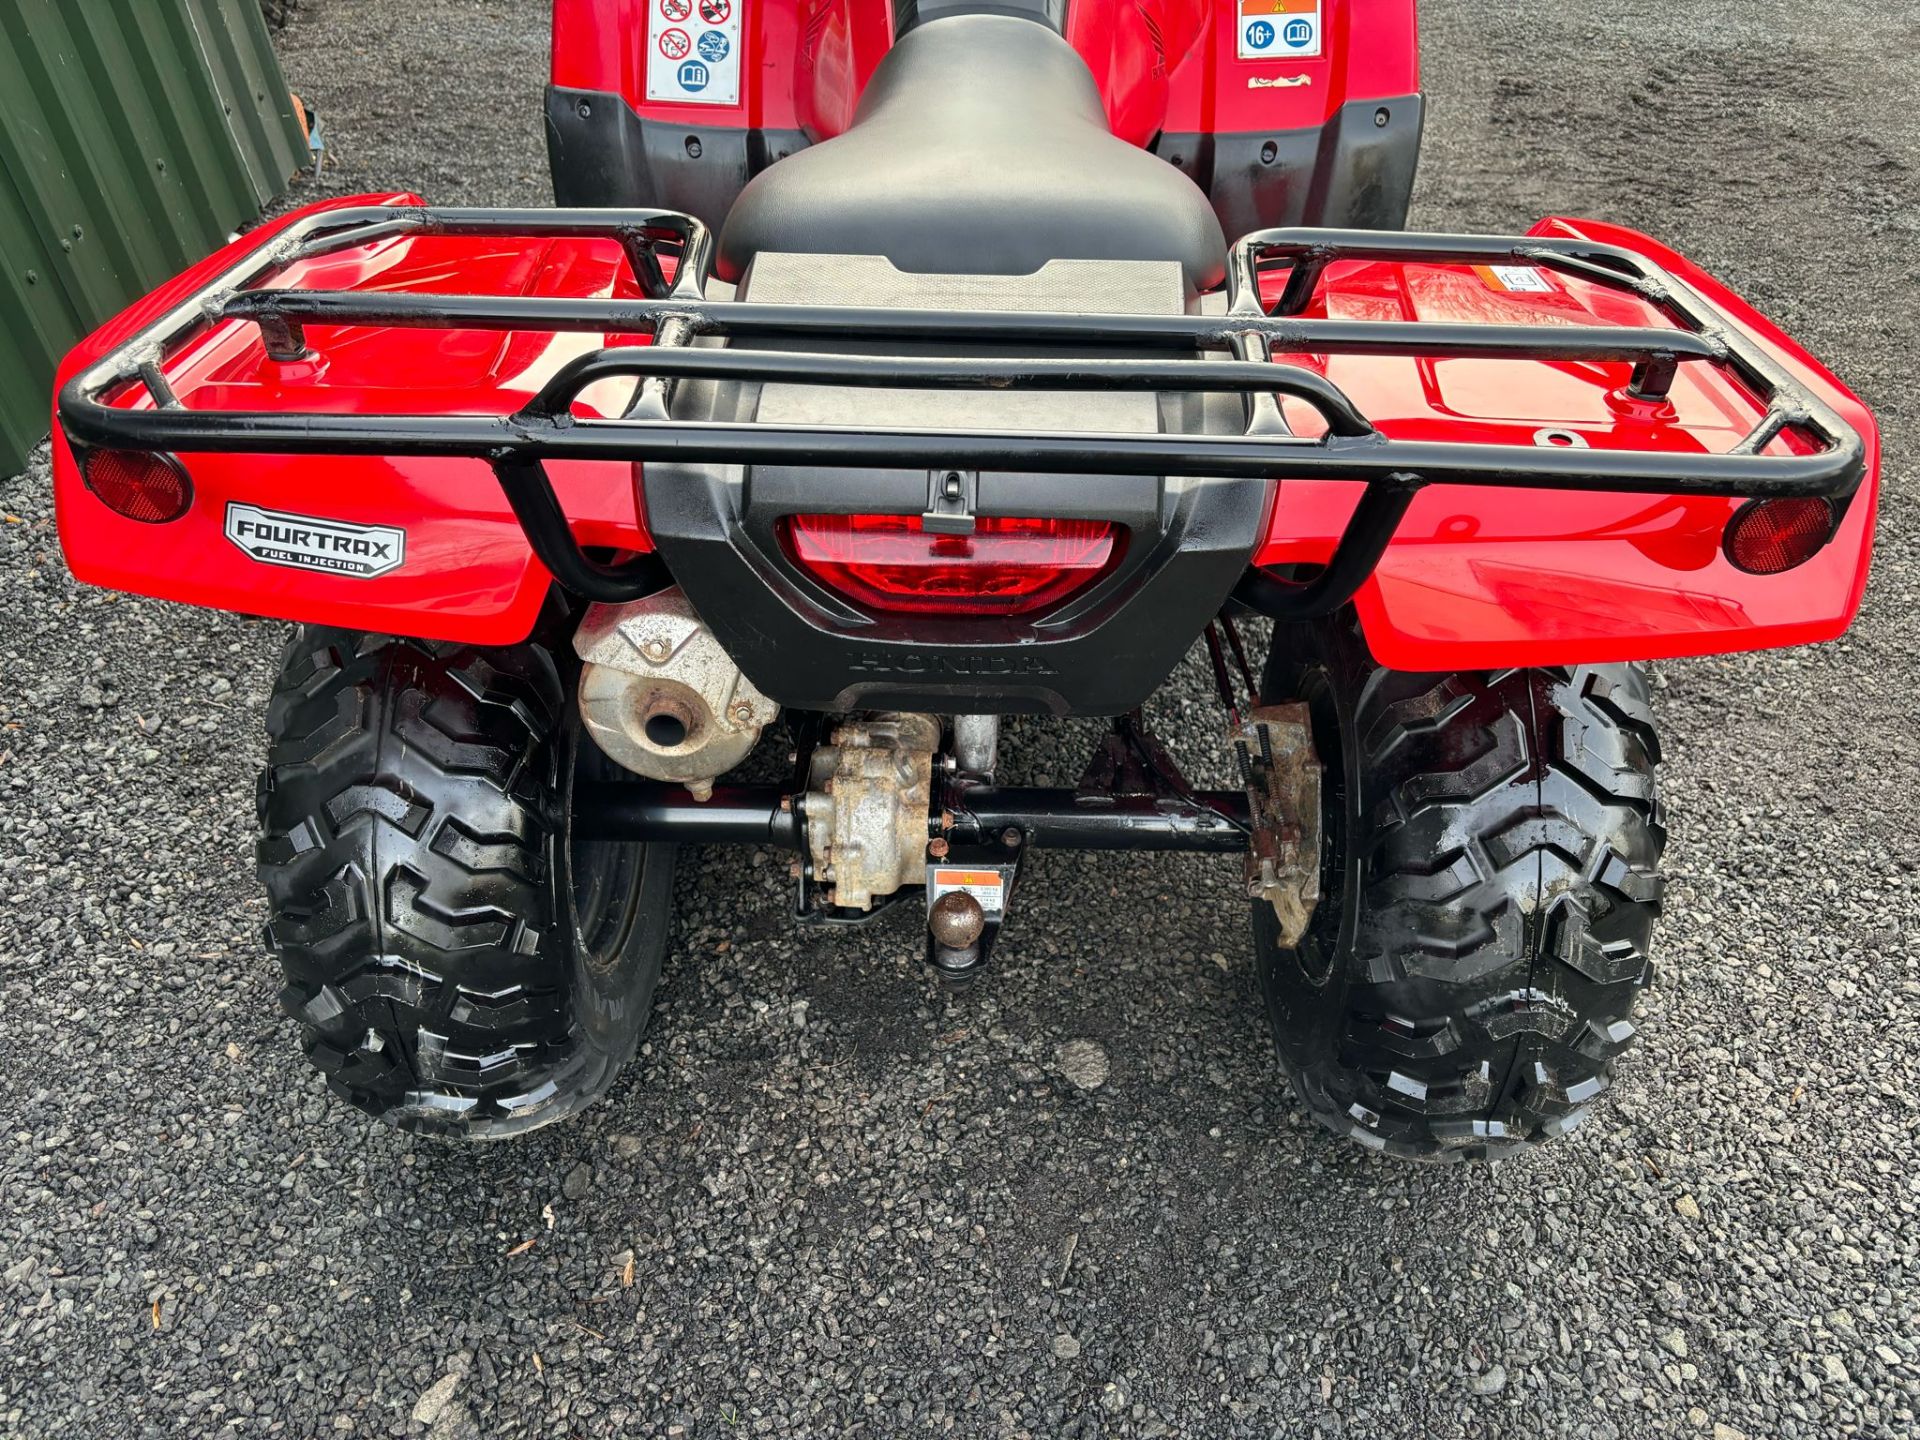 2019 ROAD REGISTERED HONDA TRX420 FARM QUAD BIKE ATV FOURTRAX TRX 420FM 4X4 4WD - Image 3 of 11